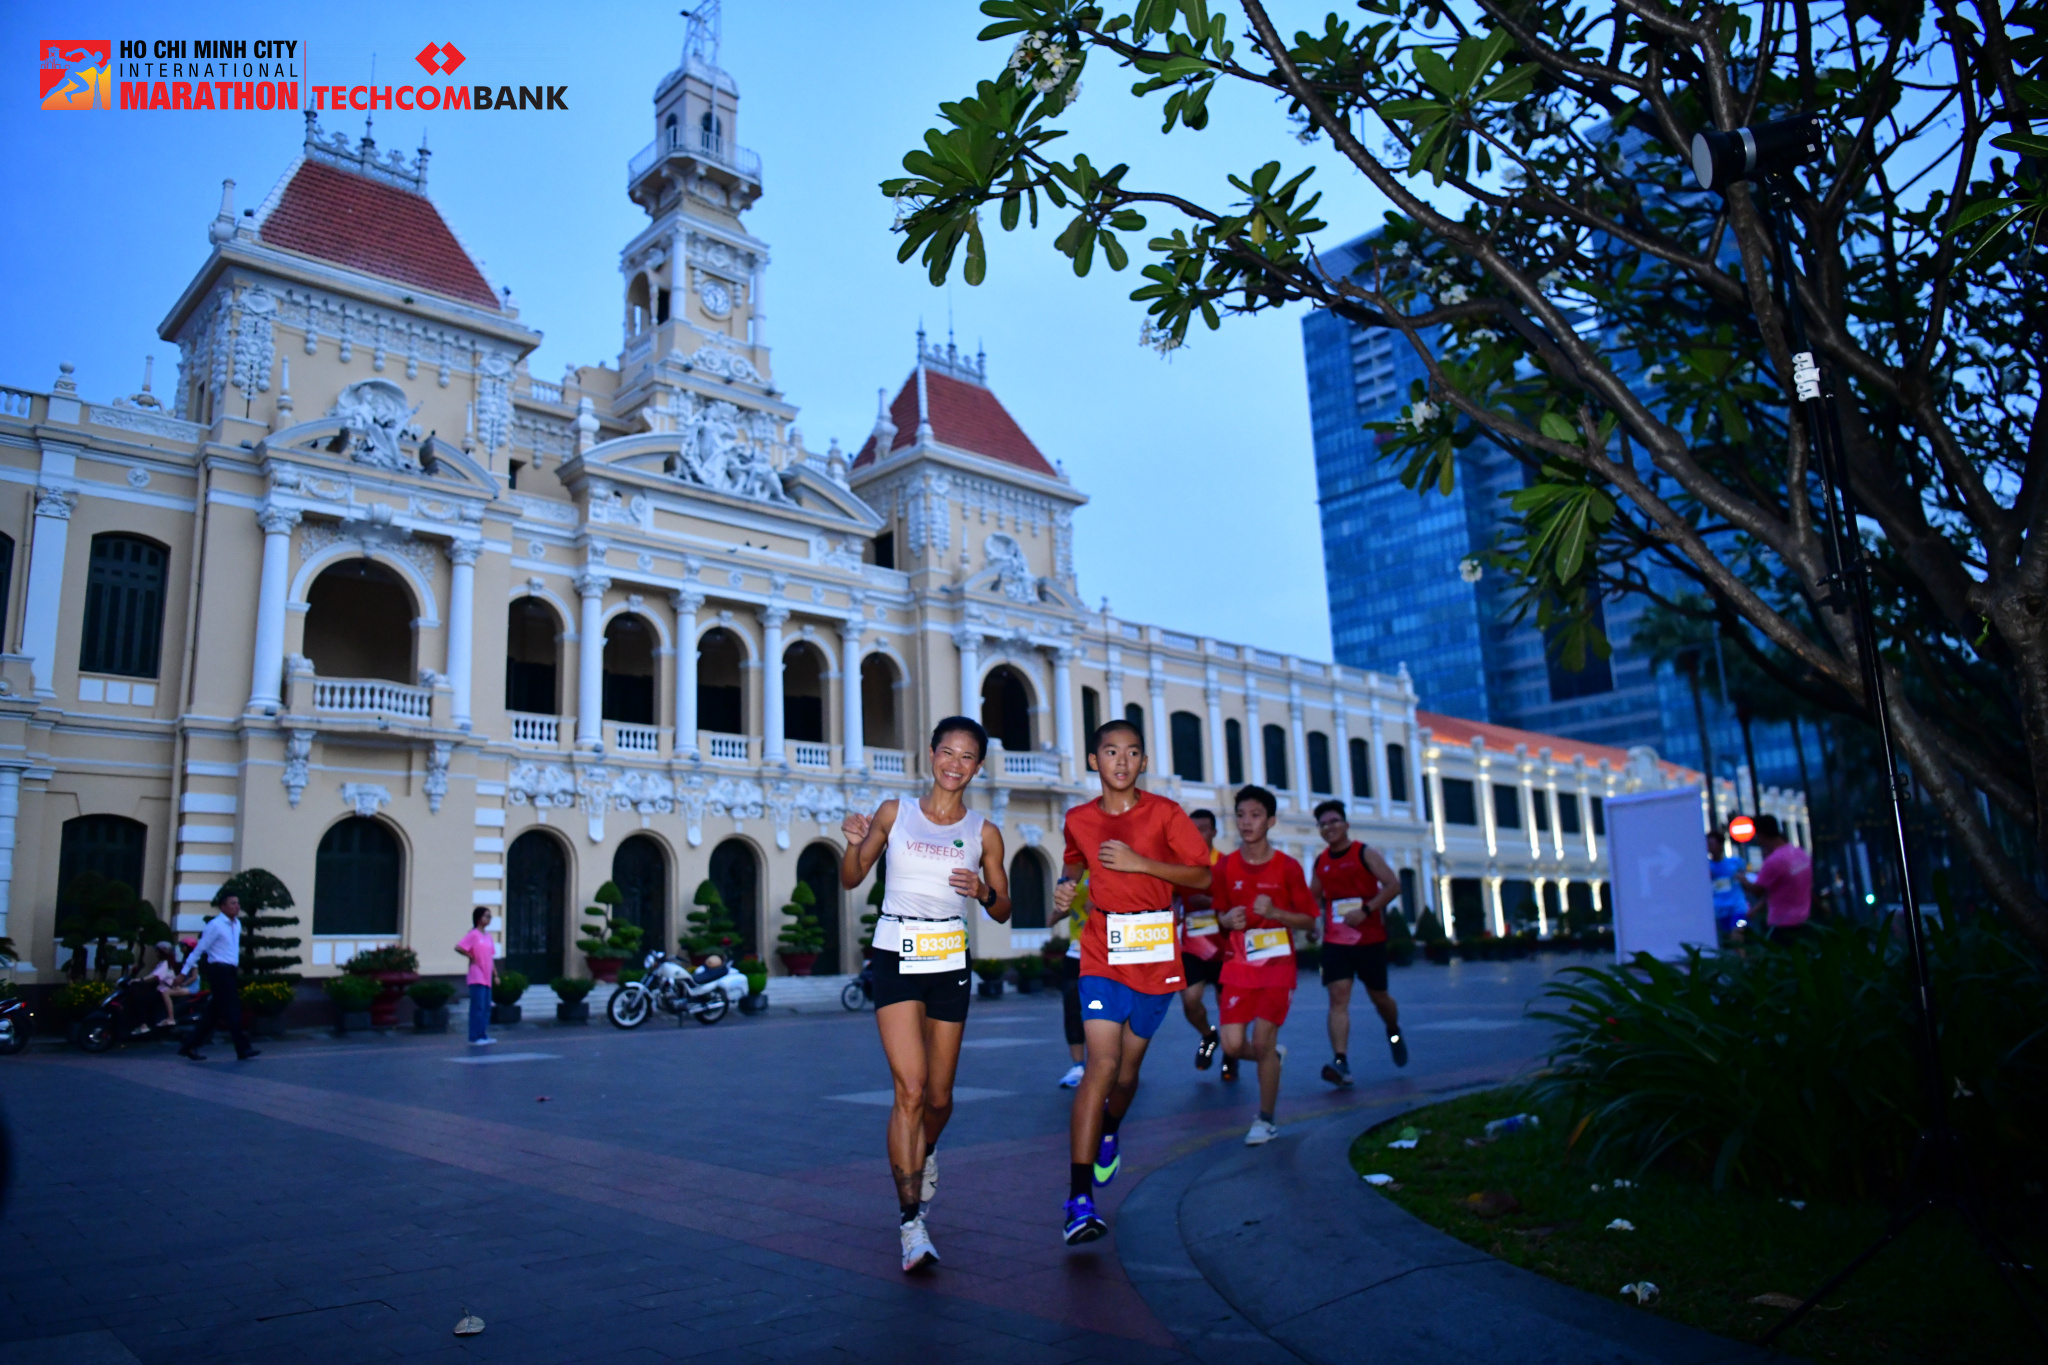 Kinh tế - Những điều thú vị ở giải marathon quốc tế Hồ Chí Minh Techcombank lần 5 (Hình 4).